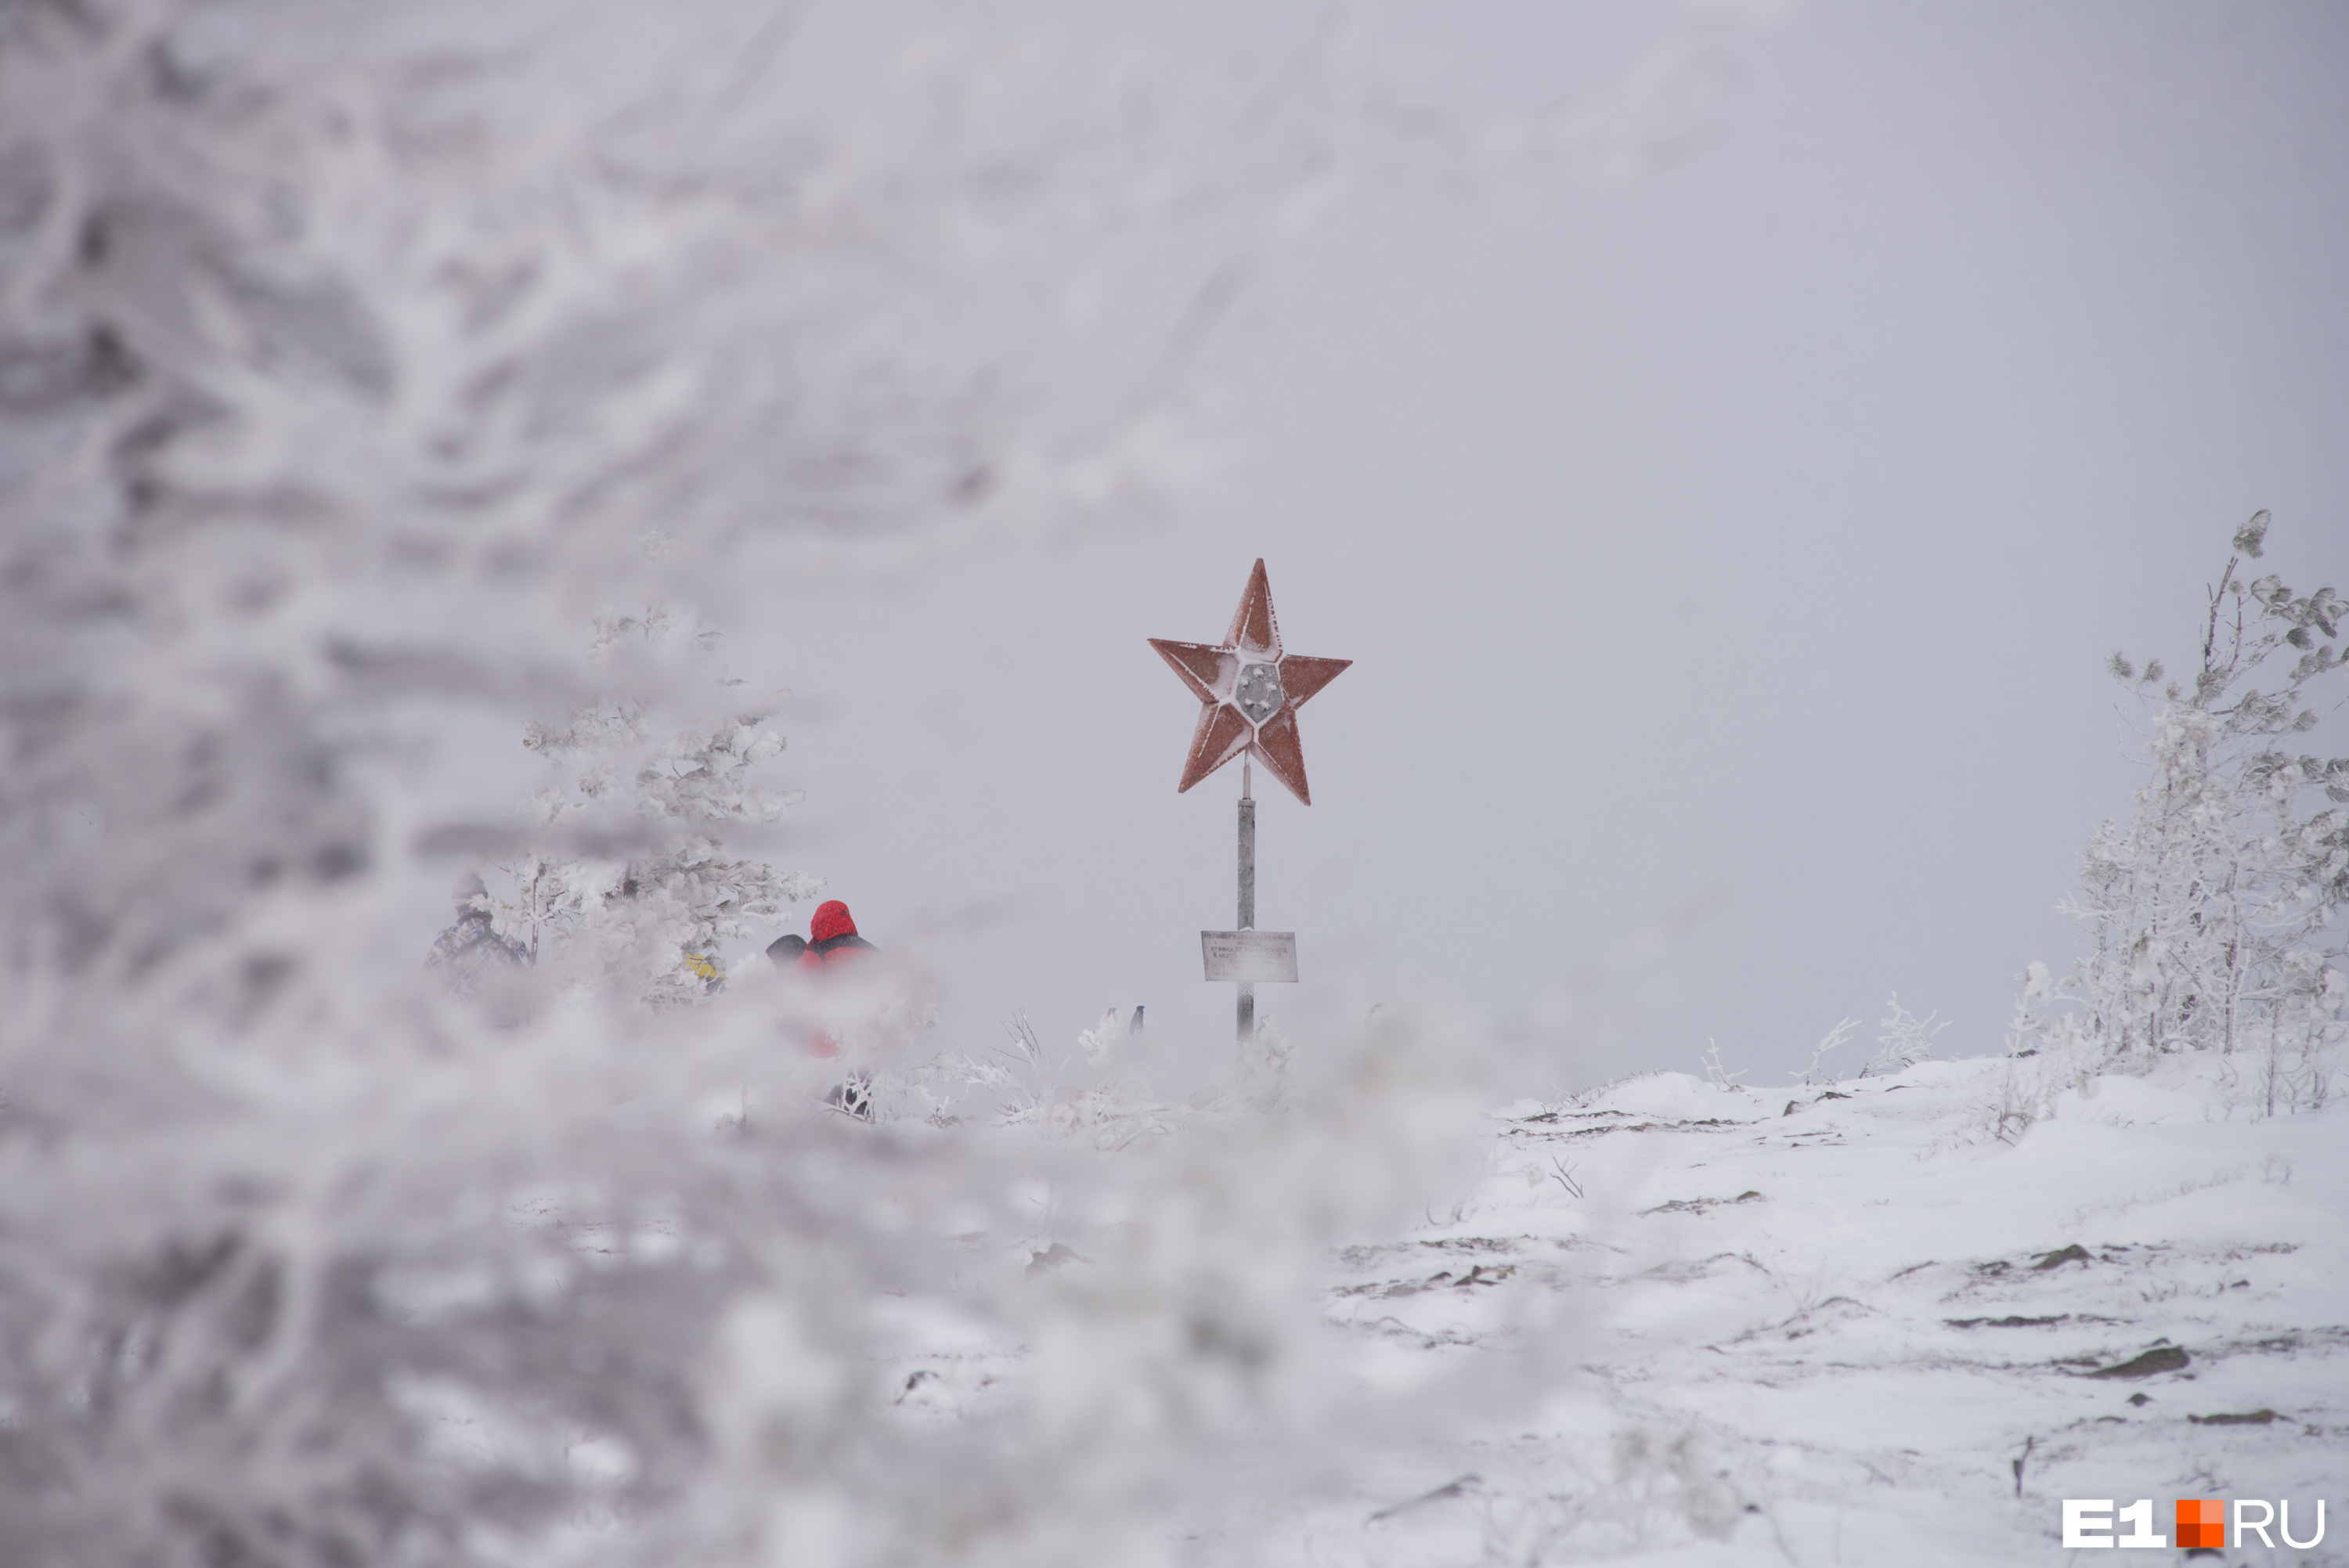 Памятник в виде советской звезды здесь появился в честь
50-летия СССР и отряда имени геолога Бориса Дидковского